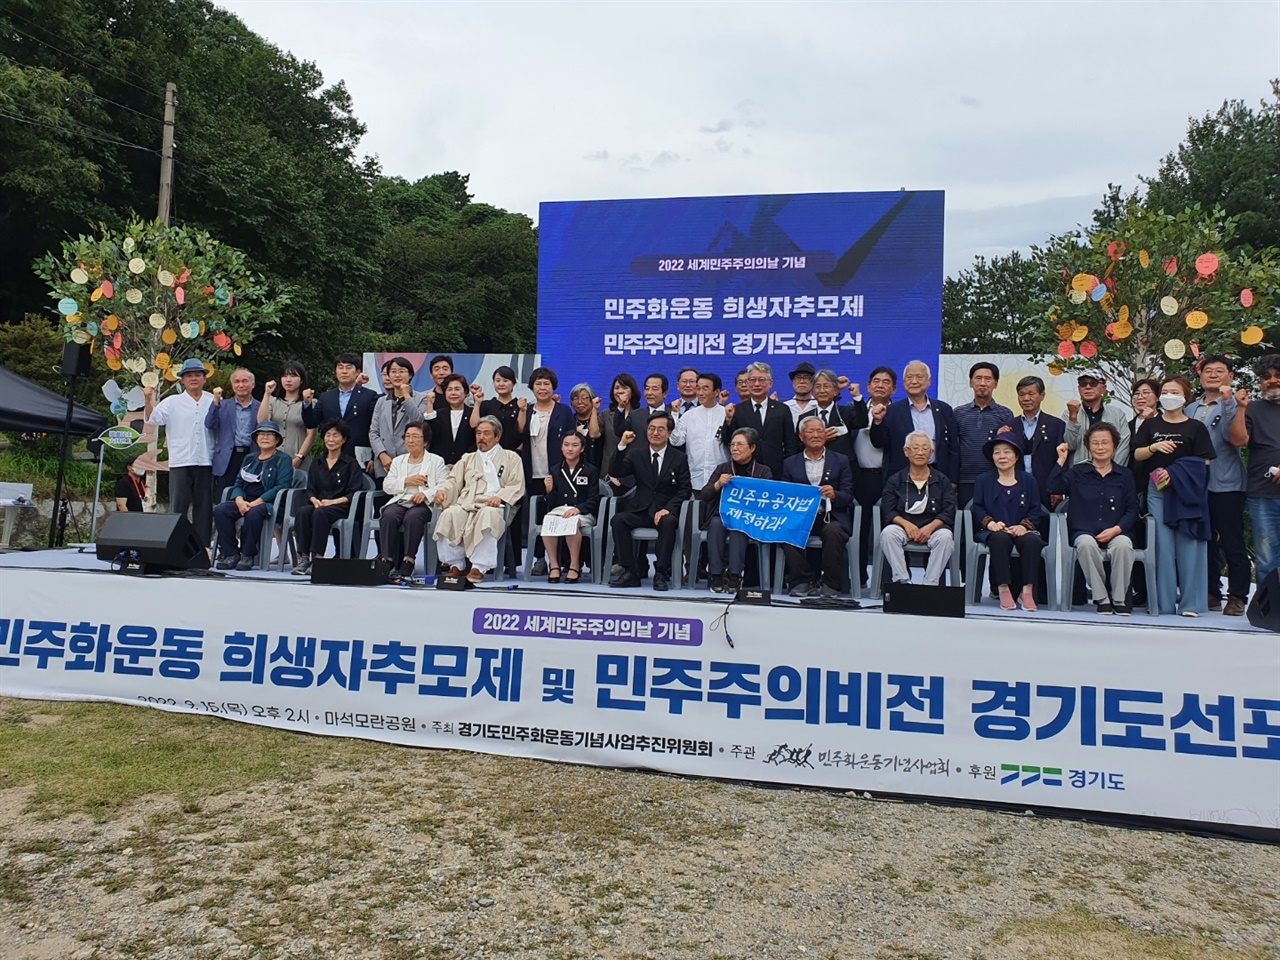 민주화운동기념사업회가 9월 15일 ‘세계민주주의의 날’을 기념하여 마석모란공원에서 <민주화운동 희생자추모제 및 민주주의비전 경기도선포식>을 개최했다. 